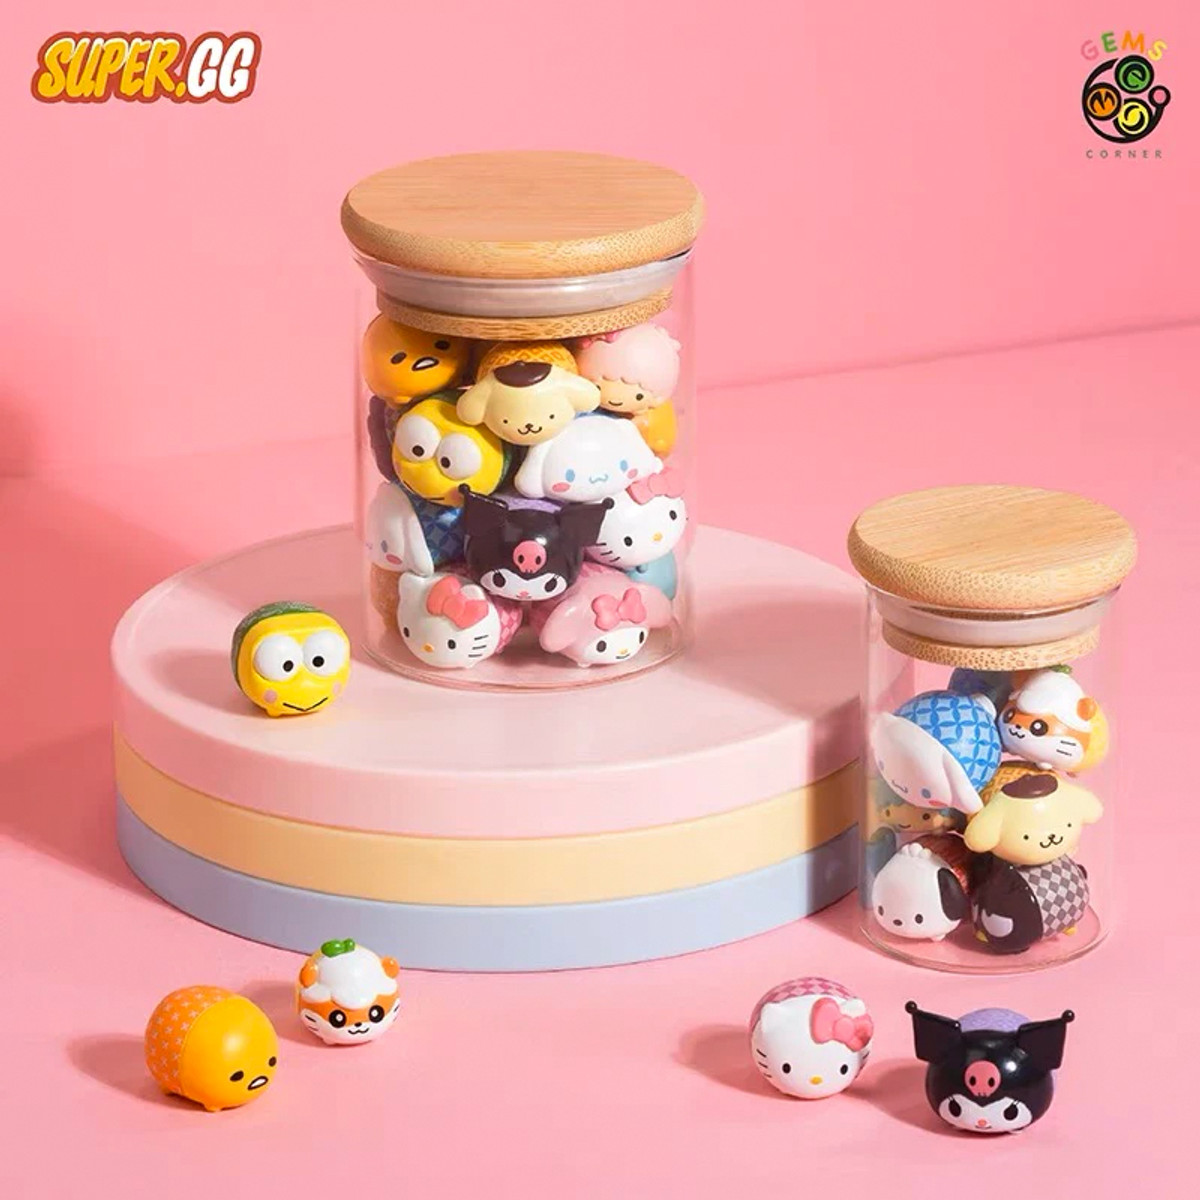 Super GG Sanrio Mini Beans Random Assortment - myplasticheart